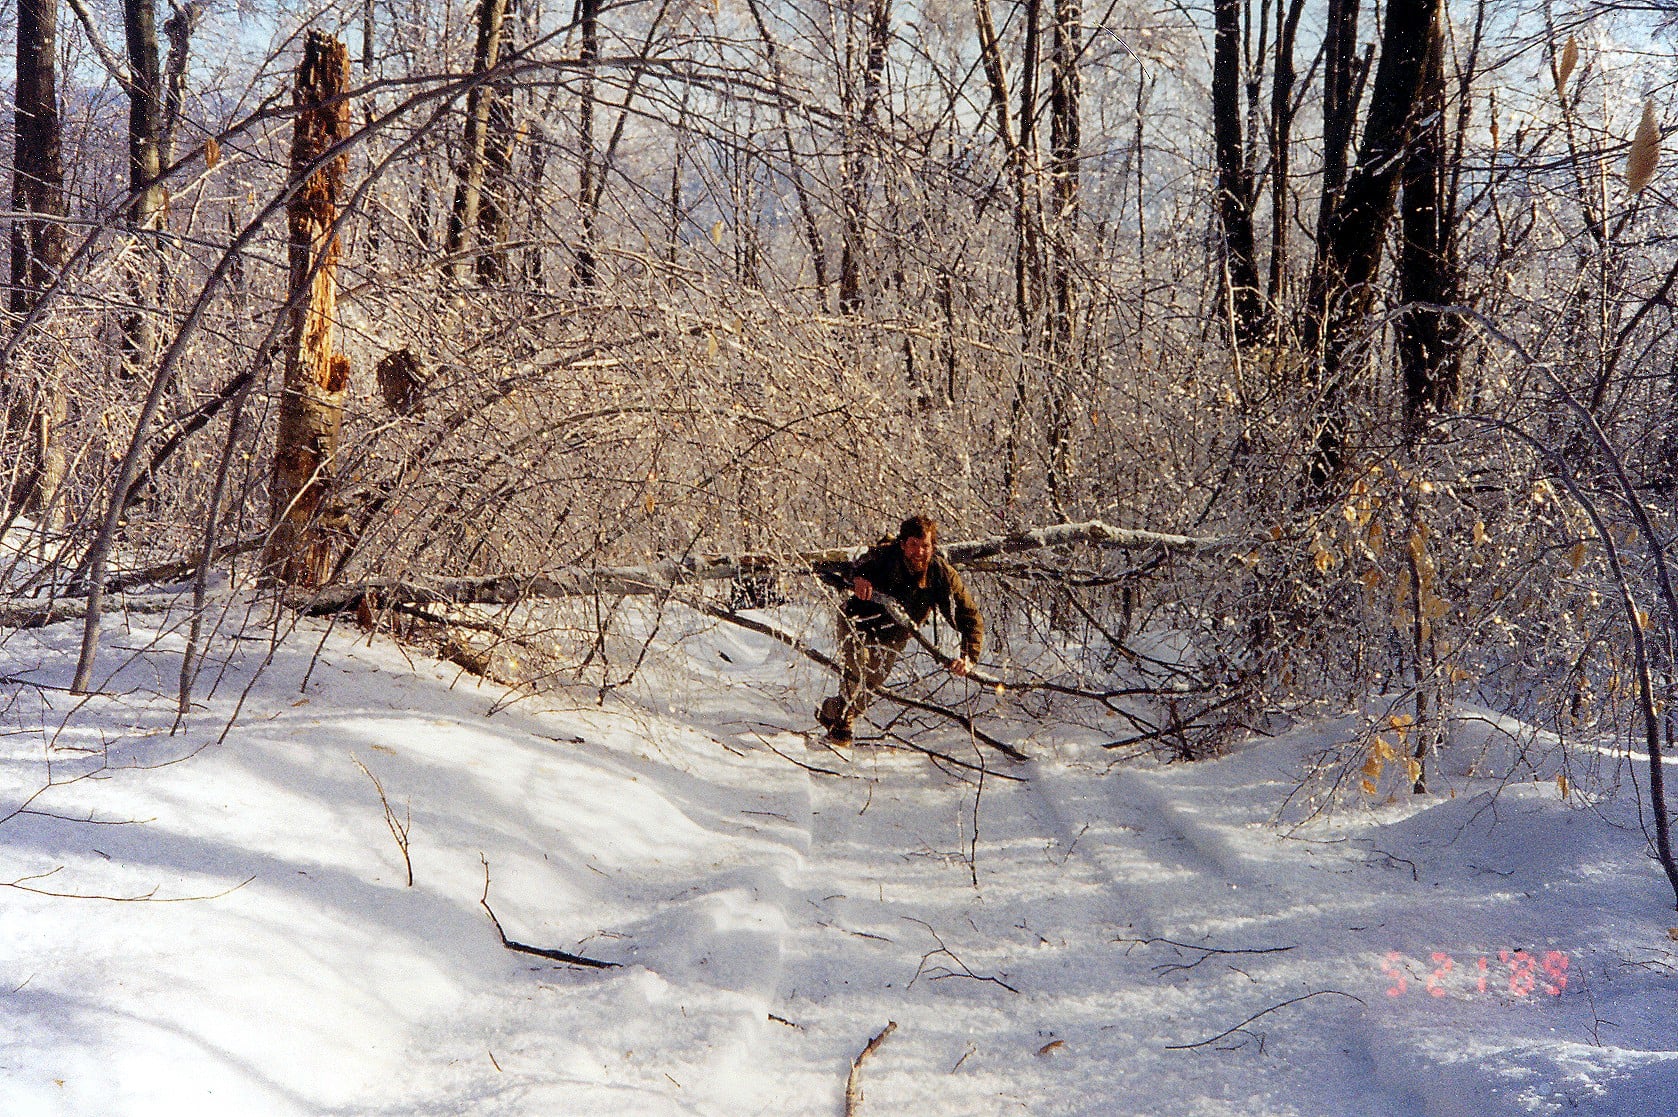 Scott Bailey wrestles a downed tree in 1998. Photo: Jennifer Pett-Ridge